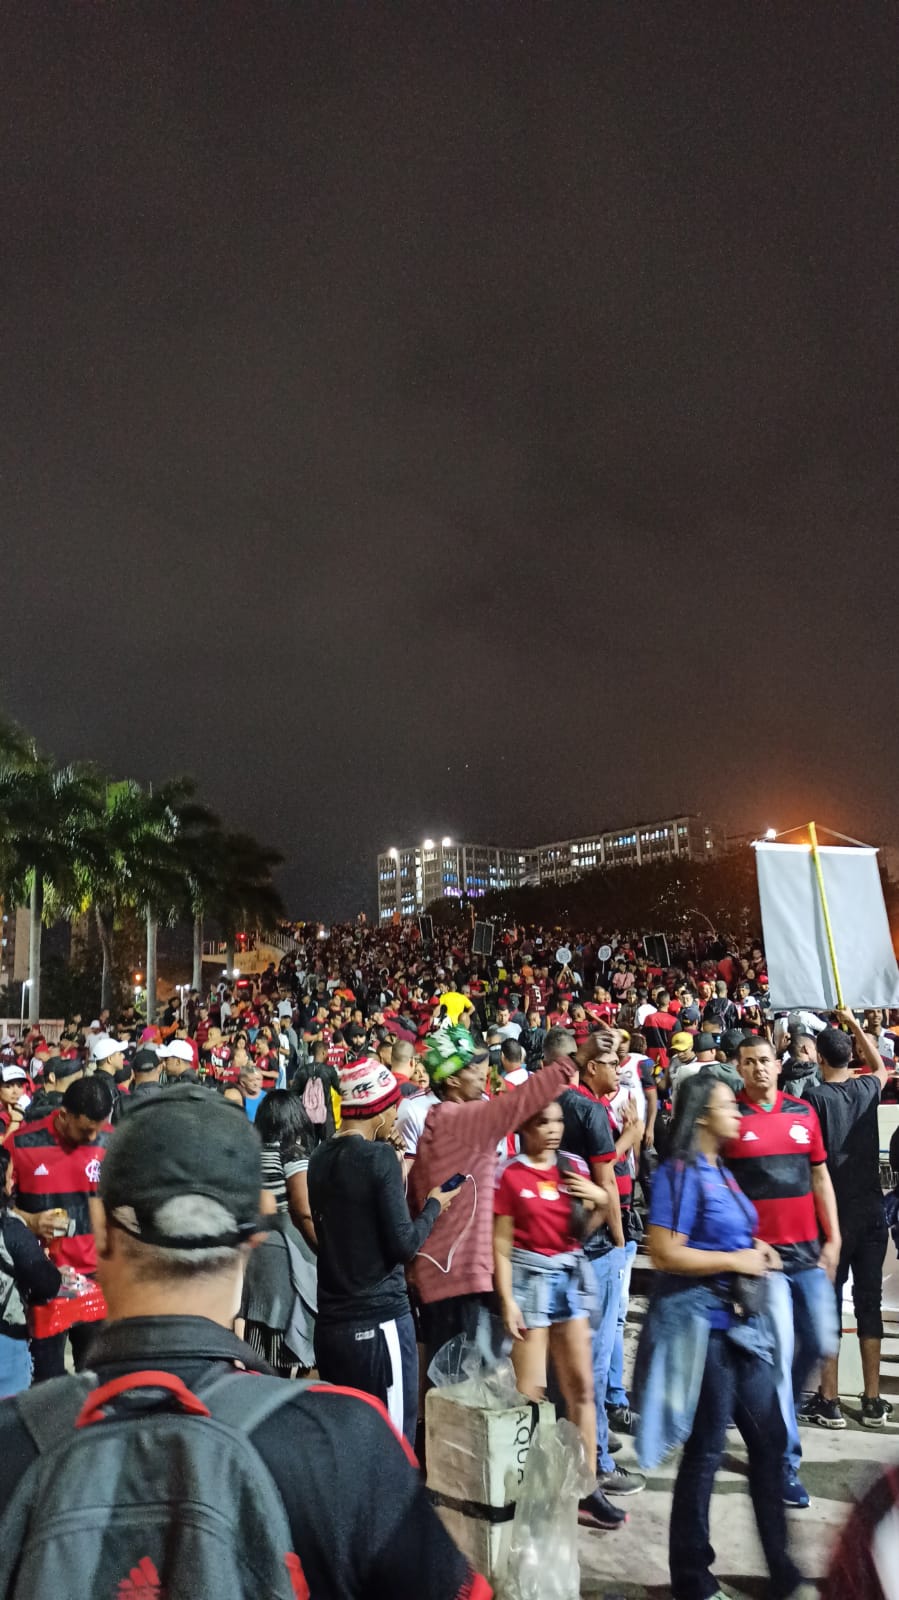 Torcida do Flamengo começa a chegar no Maracanã para jogo contra o Atlético-MG pela Copa do Brasil